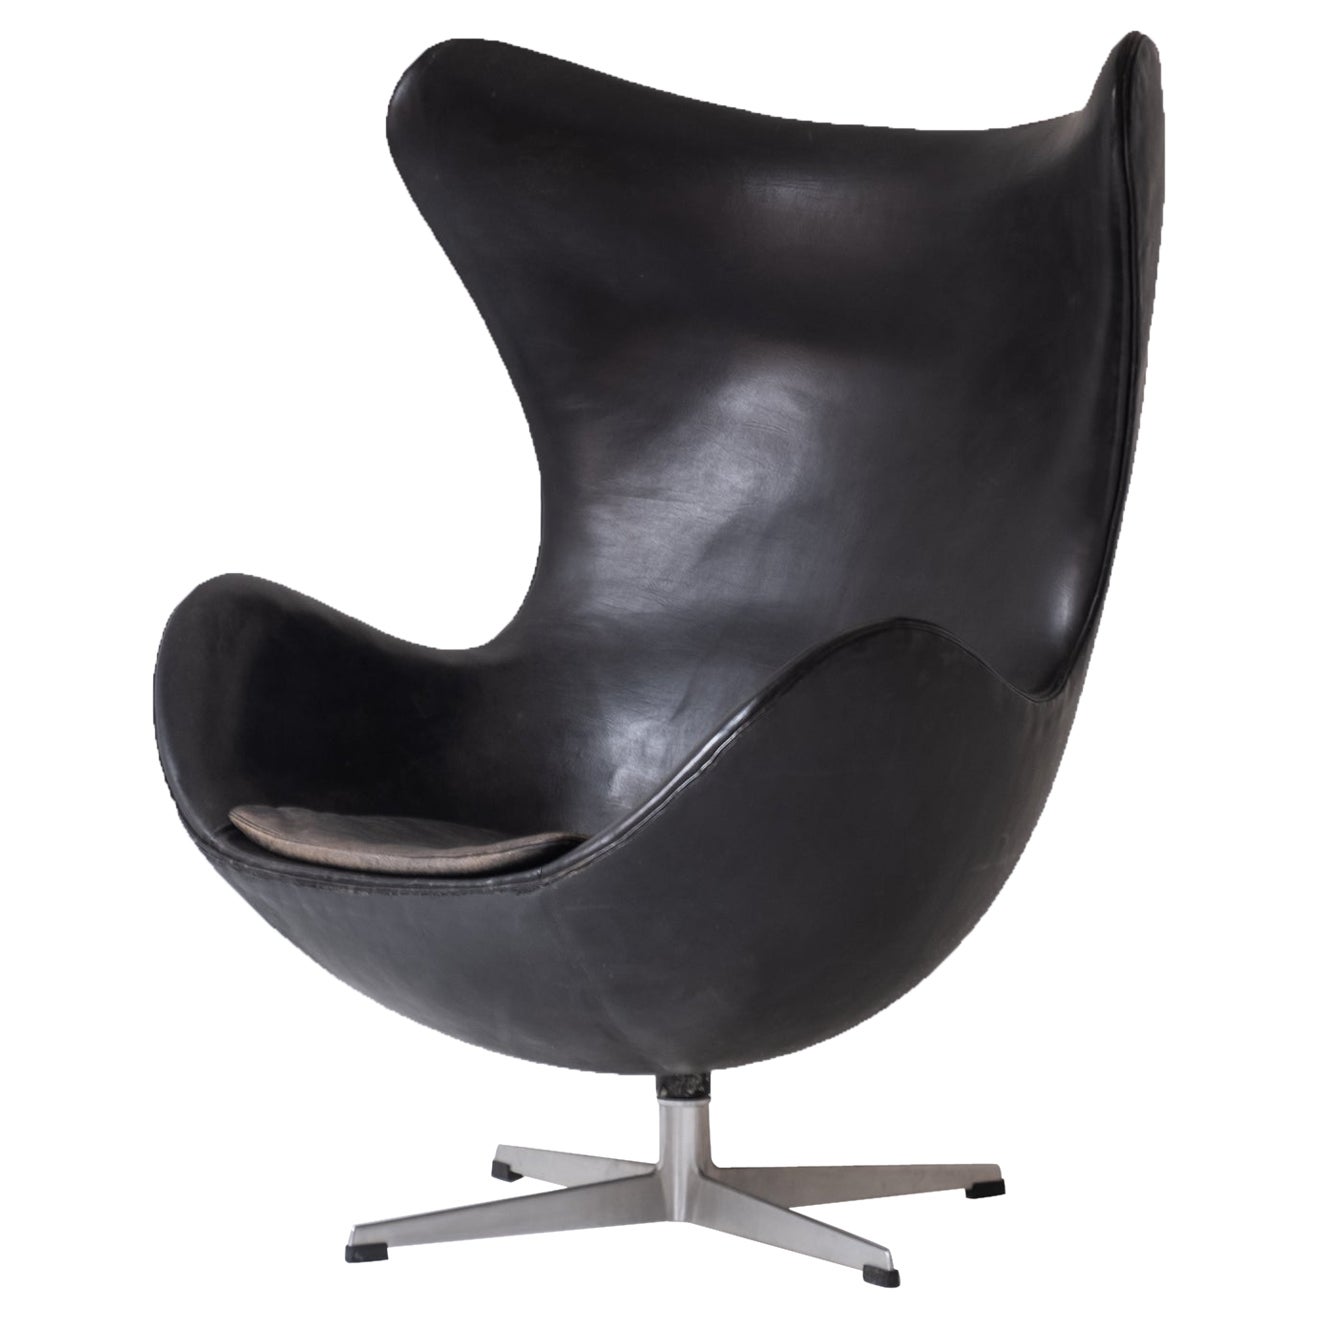 Early ‘Egg’ armchair by designed by Arne Jacobsen for Fritz Hansen, Denmark 1958